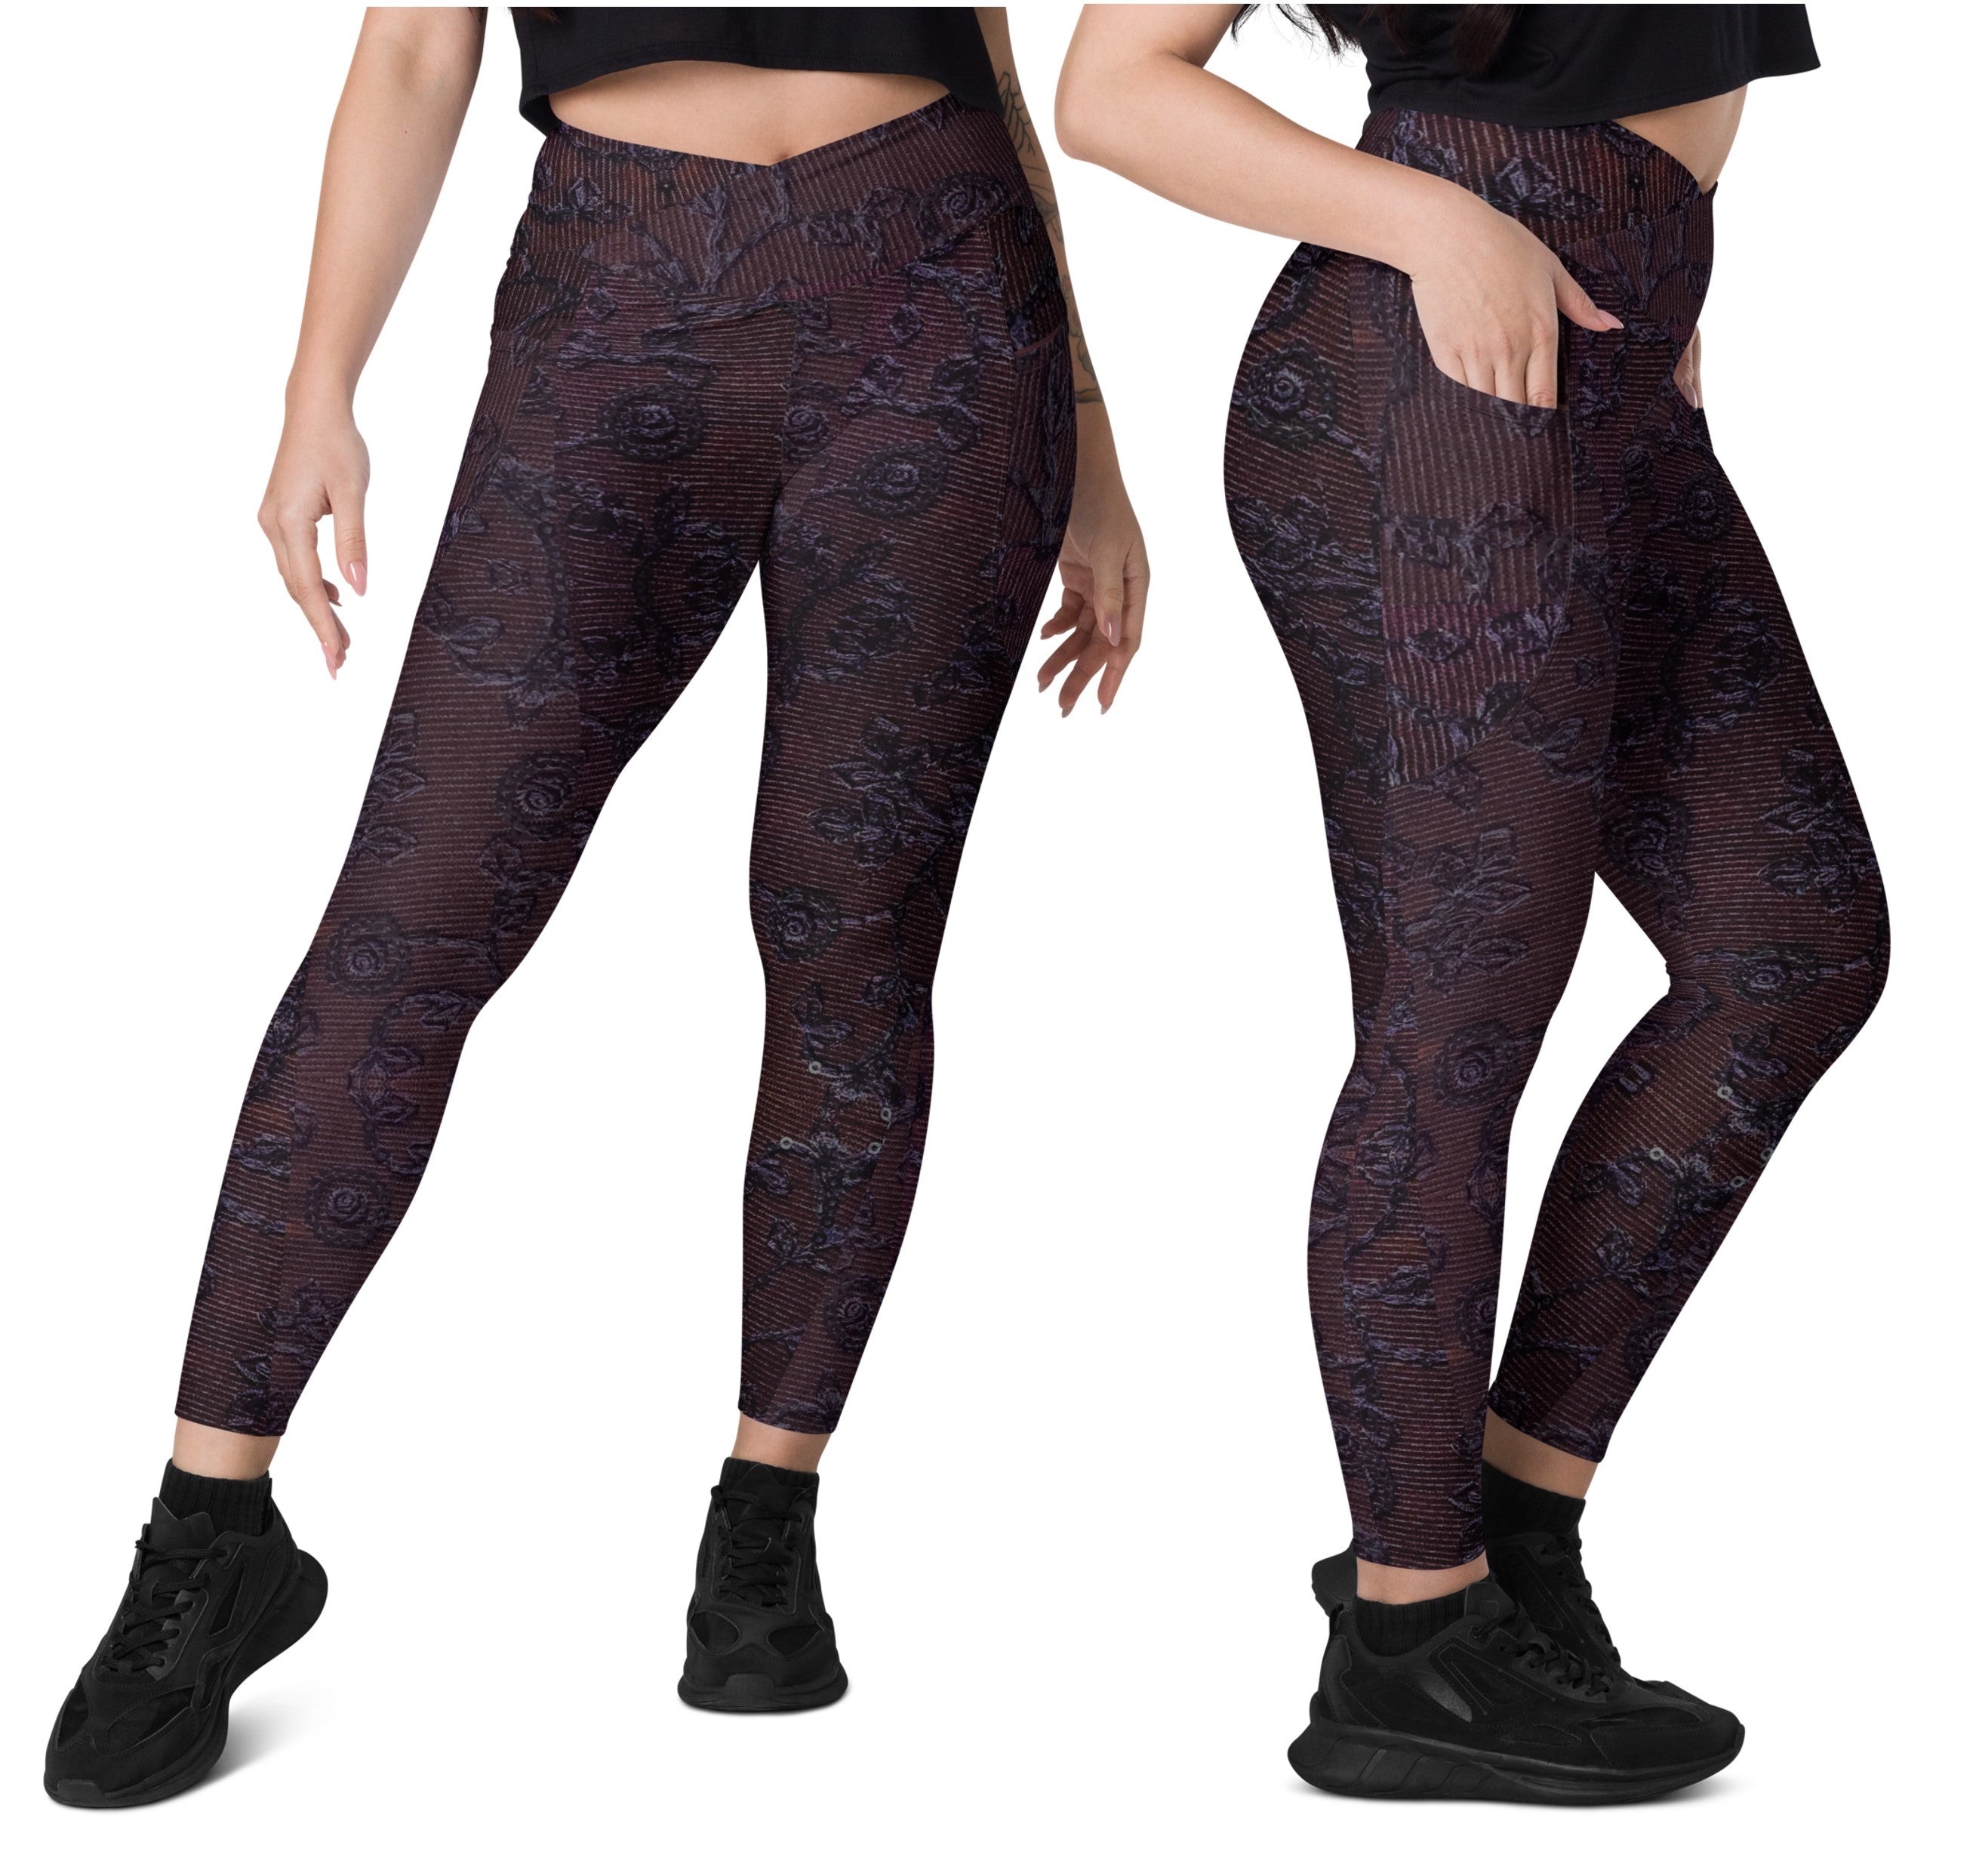 Crossover Waist Gym leggings with pockets. Boho Yoga Pants, Runner's,  Dancer's Leggings. Noor by Artikrti.